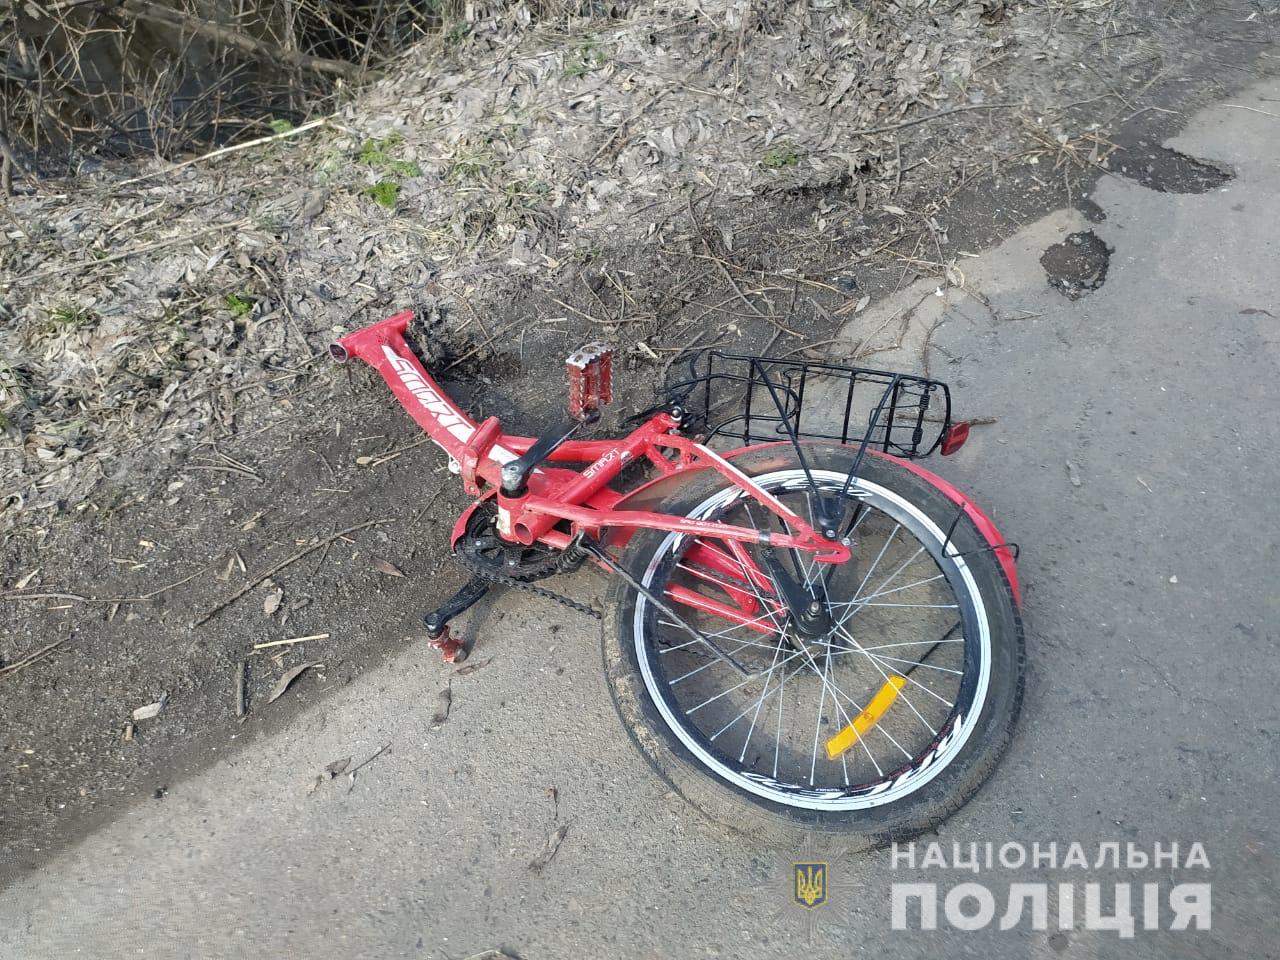 Пьяный водитель сбил насмерть двух мальчиков в Винницкой области, его авто загорелось, фото — Нацполиция